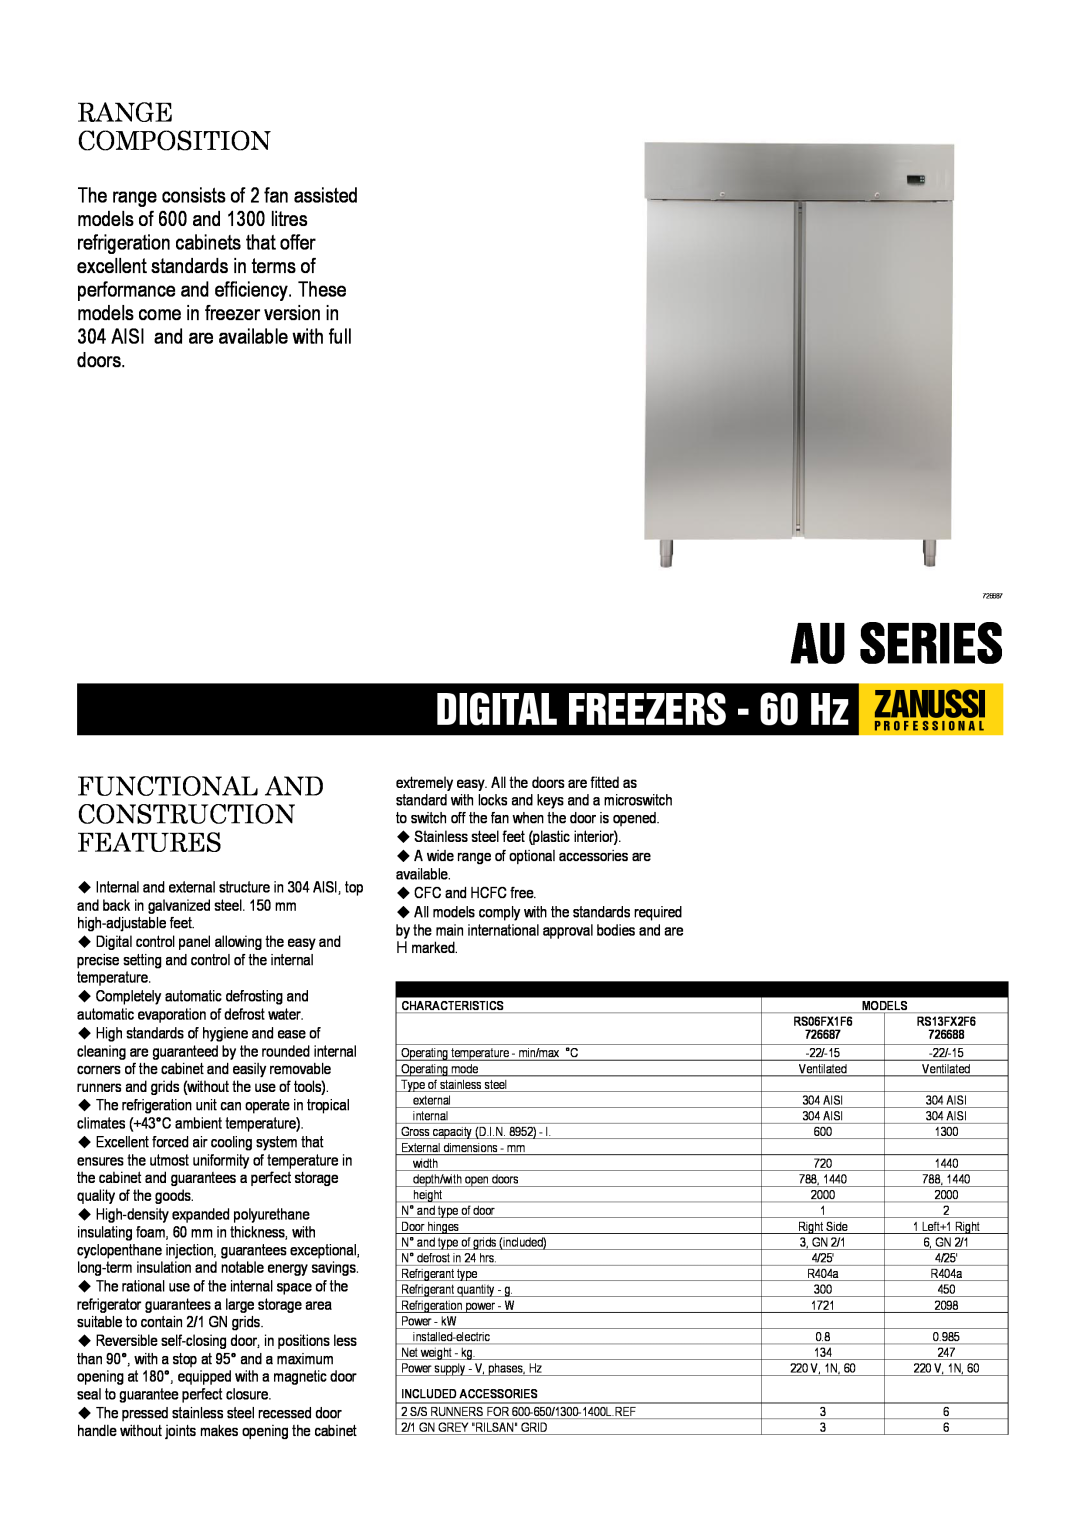 Electrolux RS06FX1F6 dimensions Au Series, DIGITAL FREEZERS - 60 Hz ZANUSSIP R O F E S S I O N A L, Range Composition 